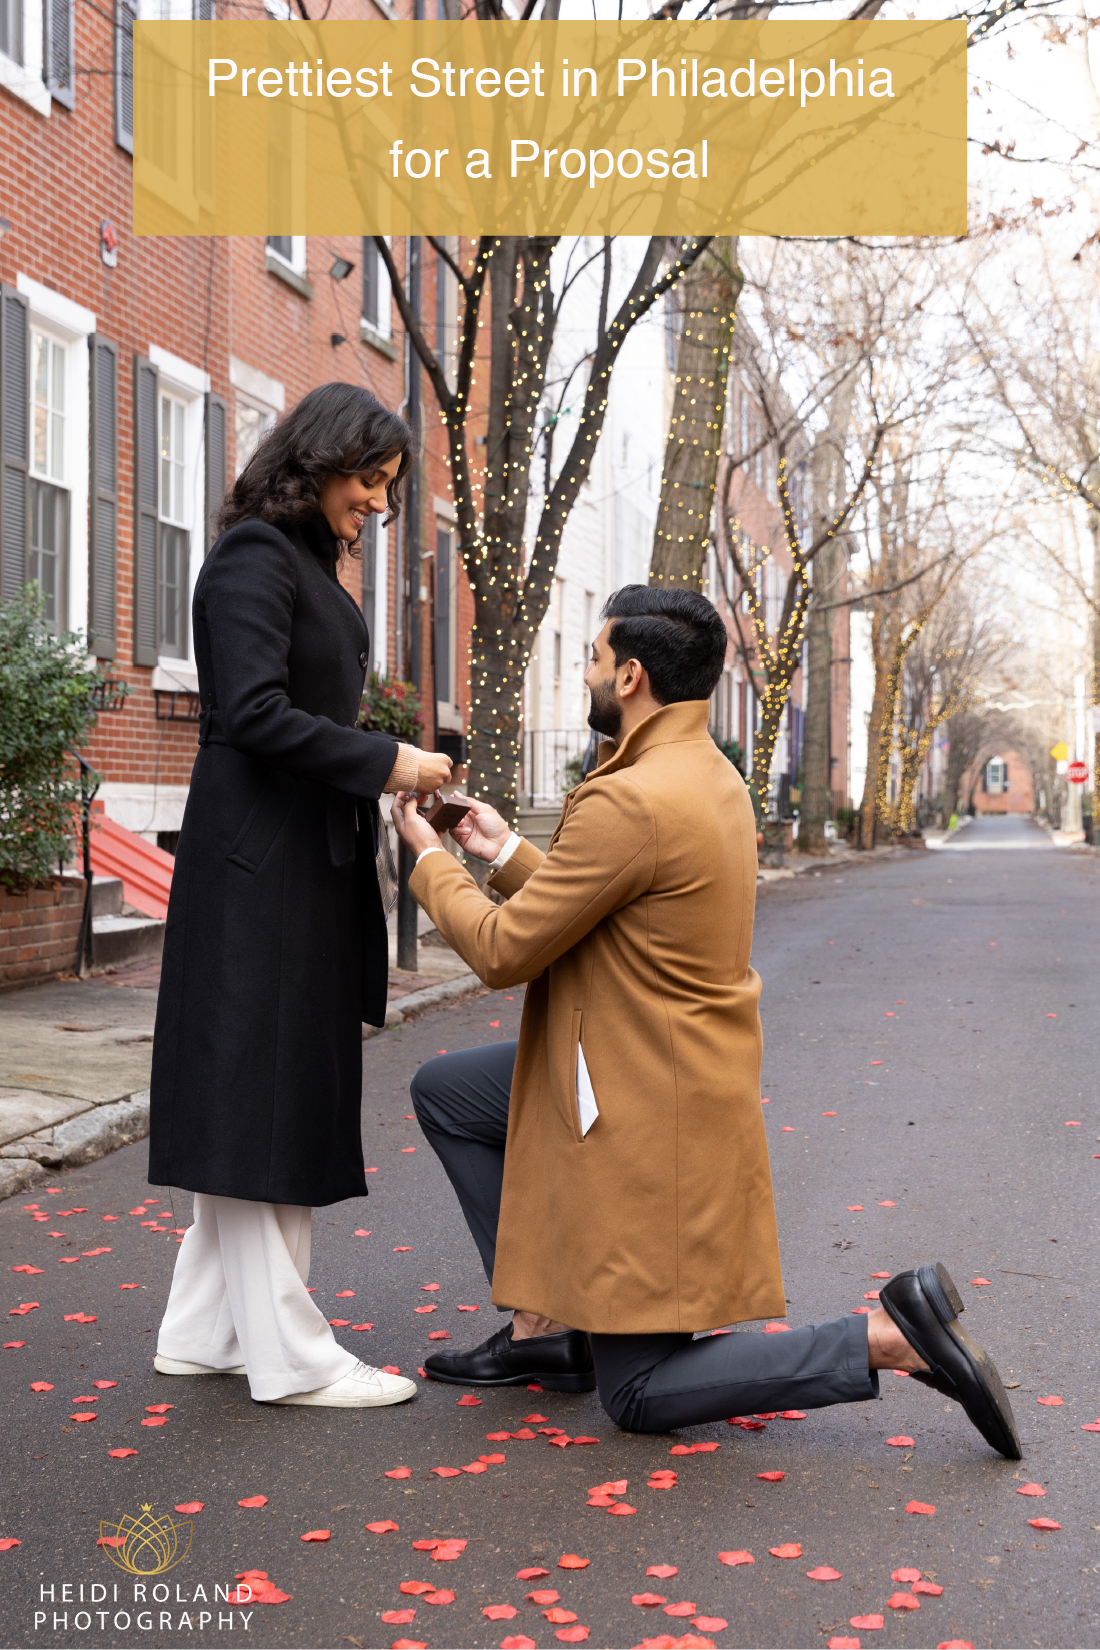 marriage proposal on pretty street in philadelphia